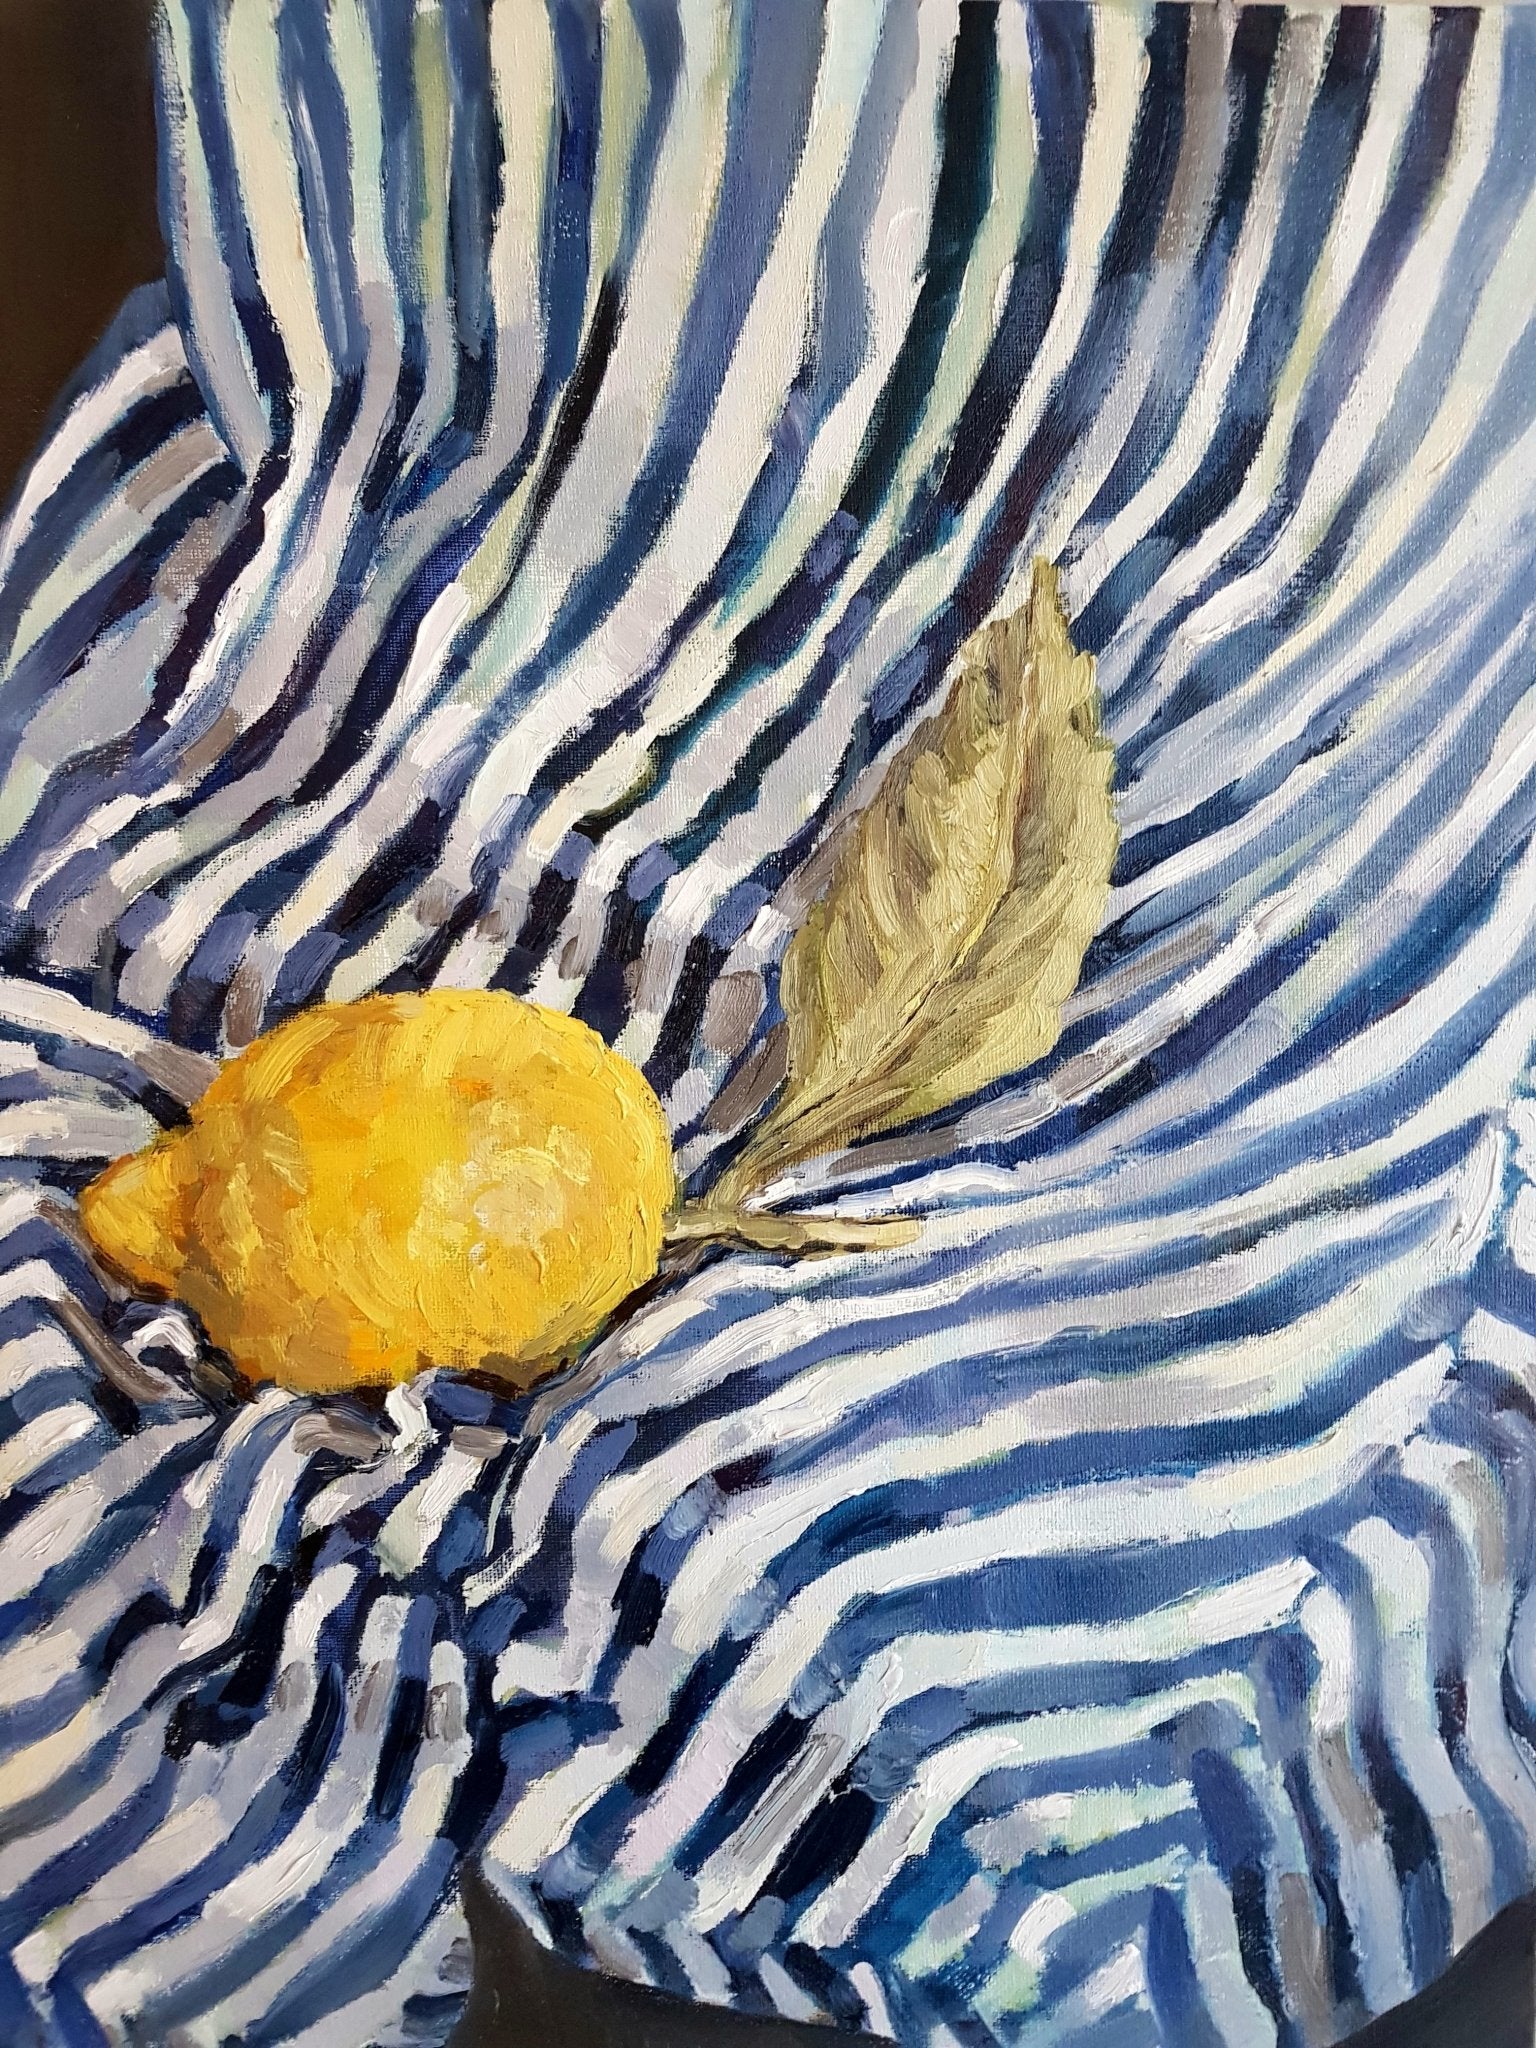 Sorrento Lemon On Stripes Original Paintings Harriet Lawless Artist fruit still life